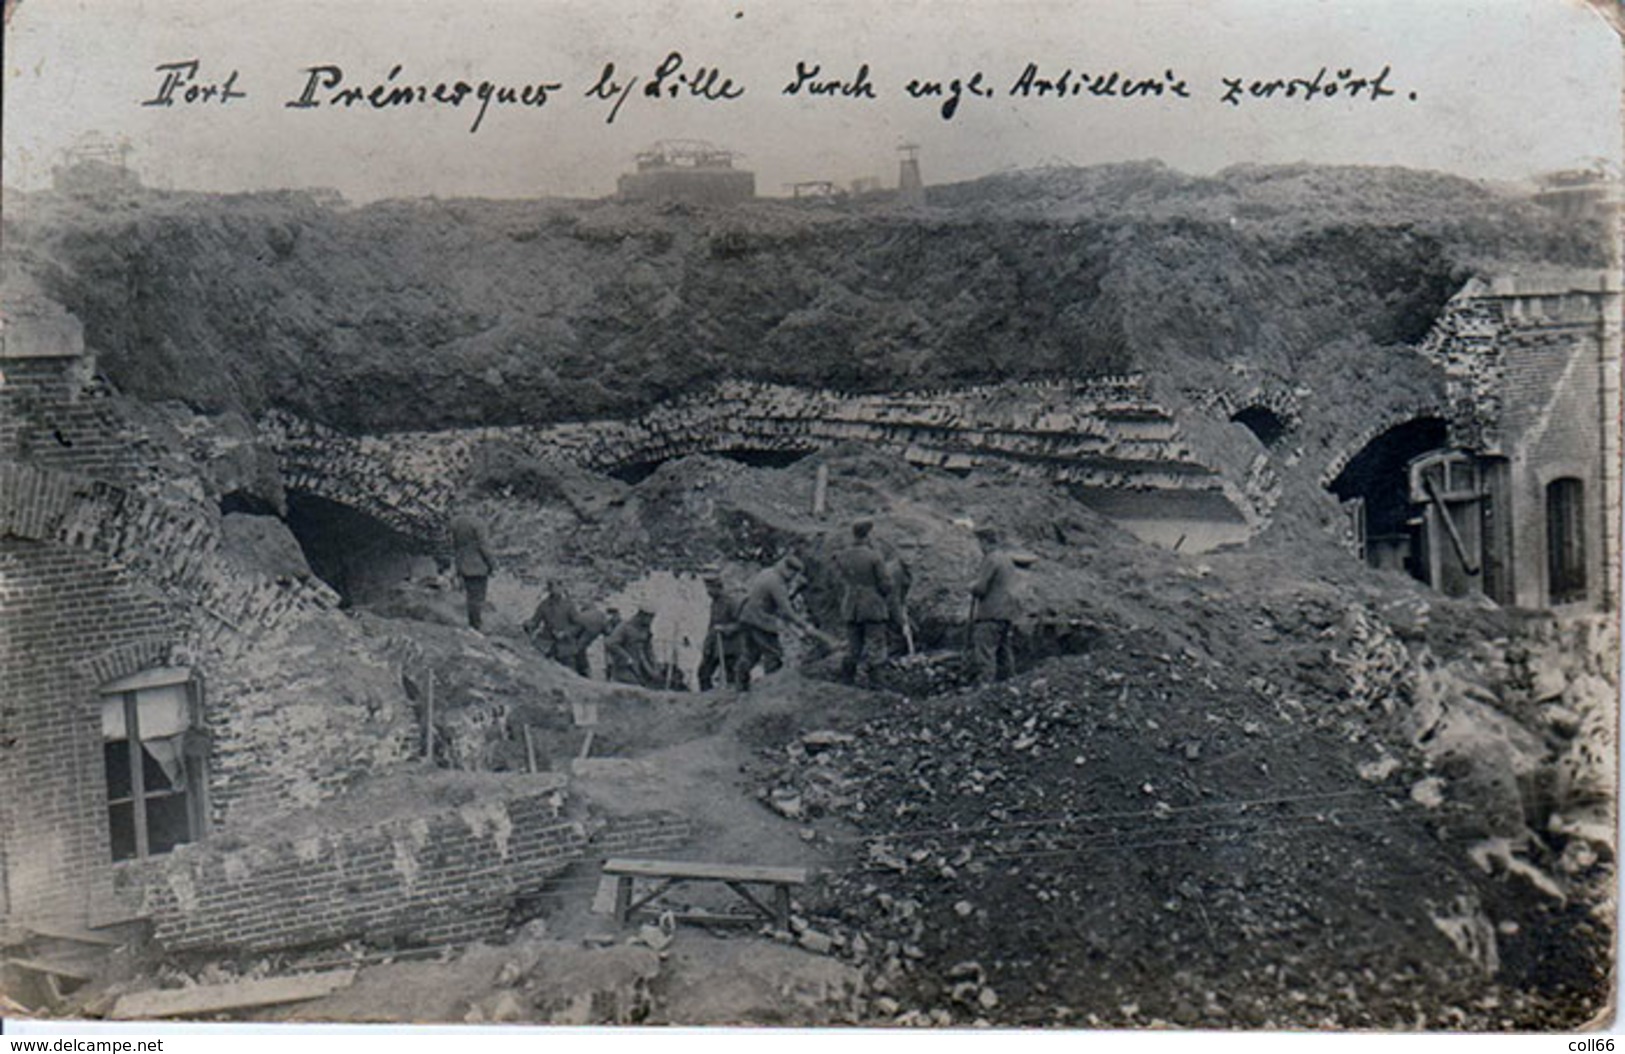 Ww1 Rare Carte-Photo Du 59 Fort Premesques Poilus Allemands Travaillant  TB Animée éditeur Non Précisé Dos Scanné - Guerre 1914-18